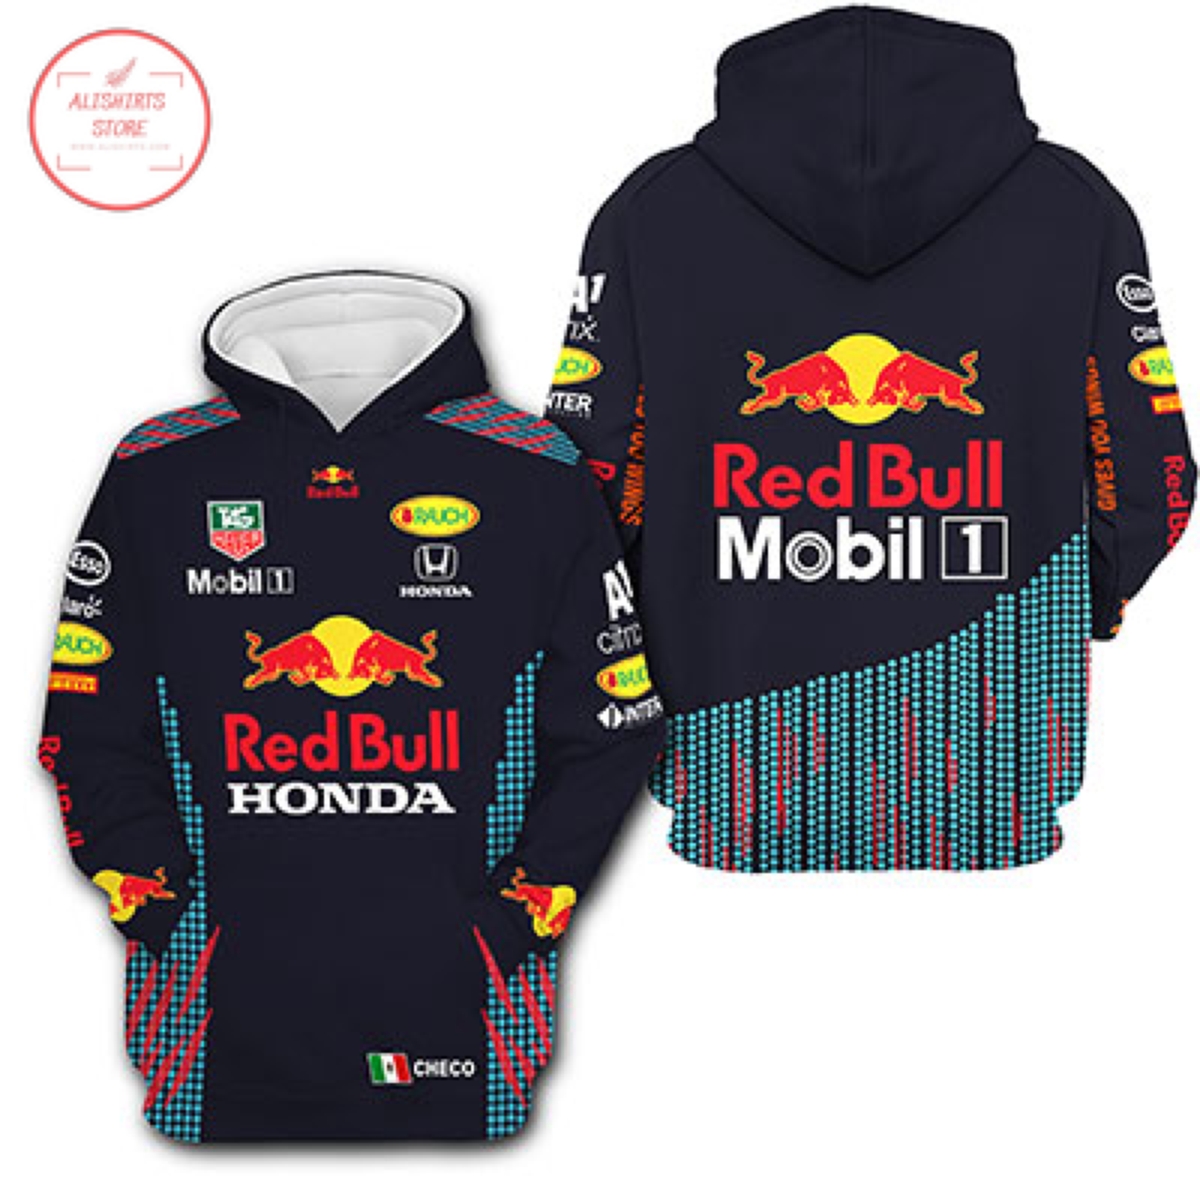 Red Bull Honda Mobil Racing F1 3D Hoodie